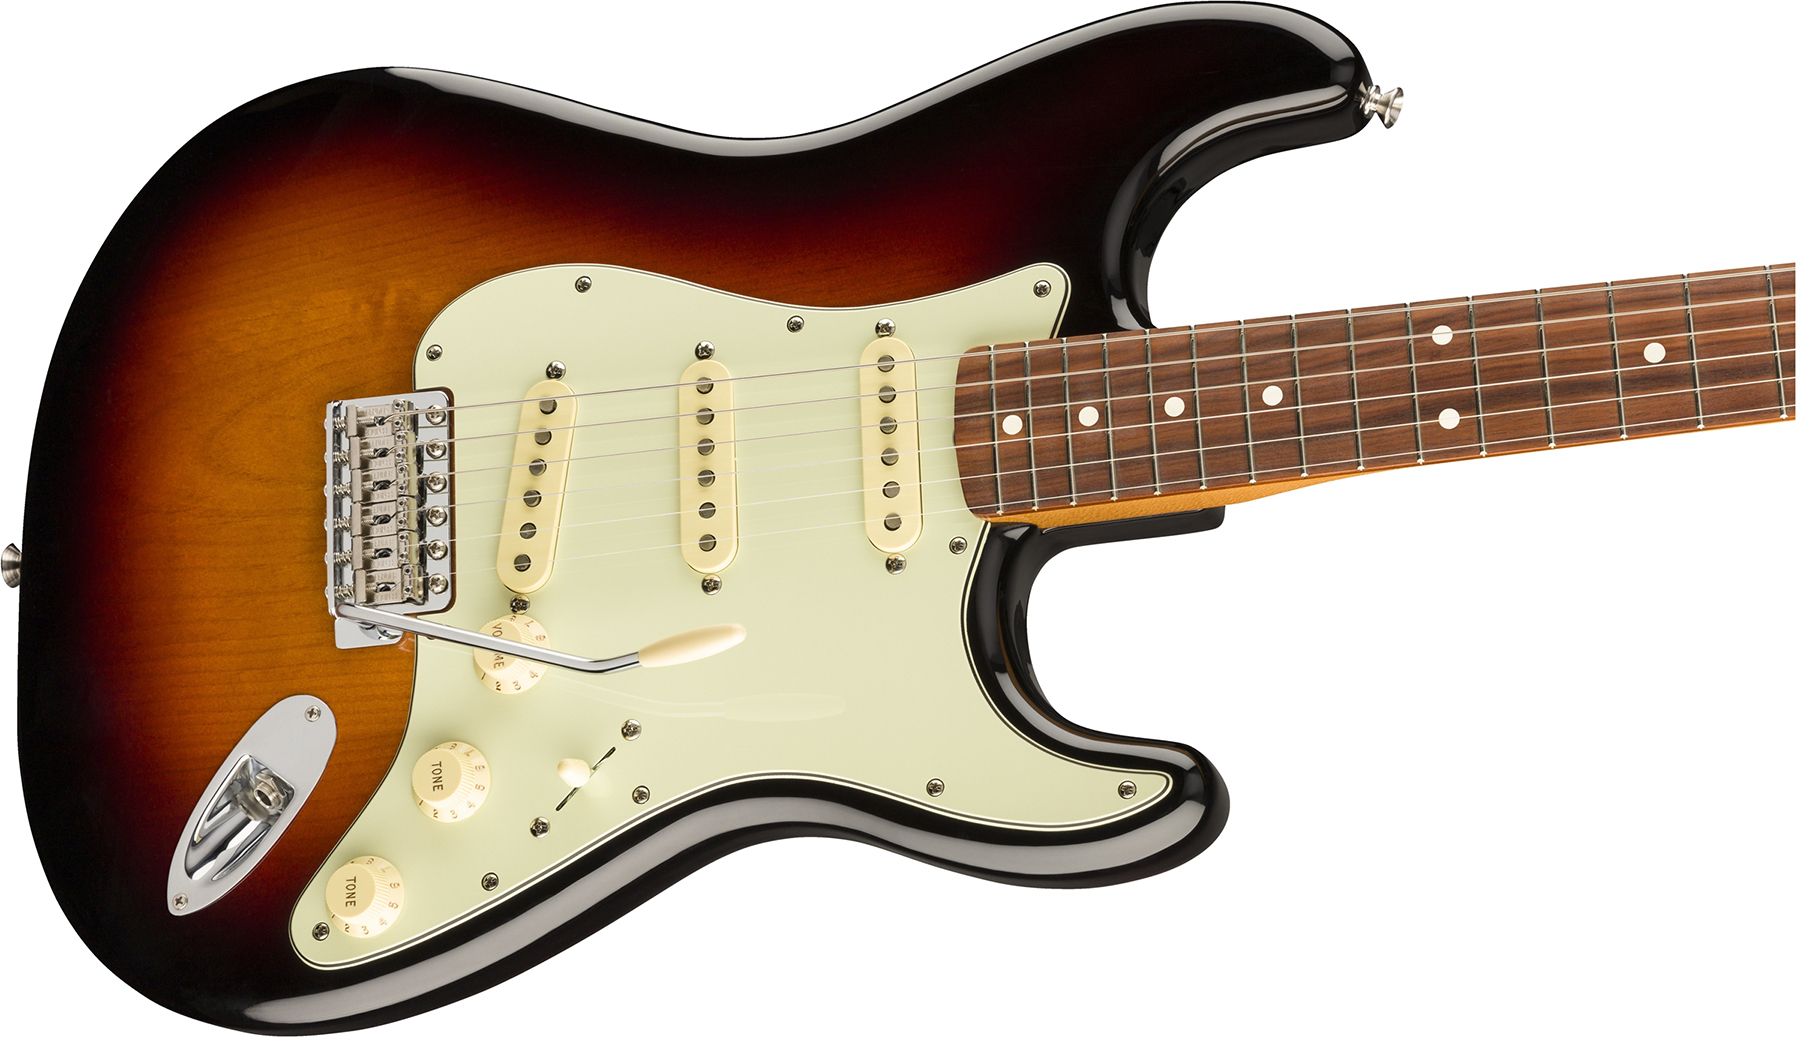 Fender Strat 60s Vintera Vintage Mex Pf - 3-color Sunburst - Str shape electric guitar - Variation 2